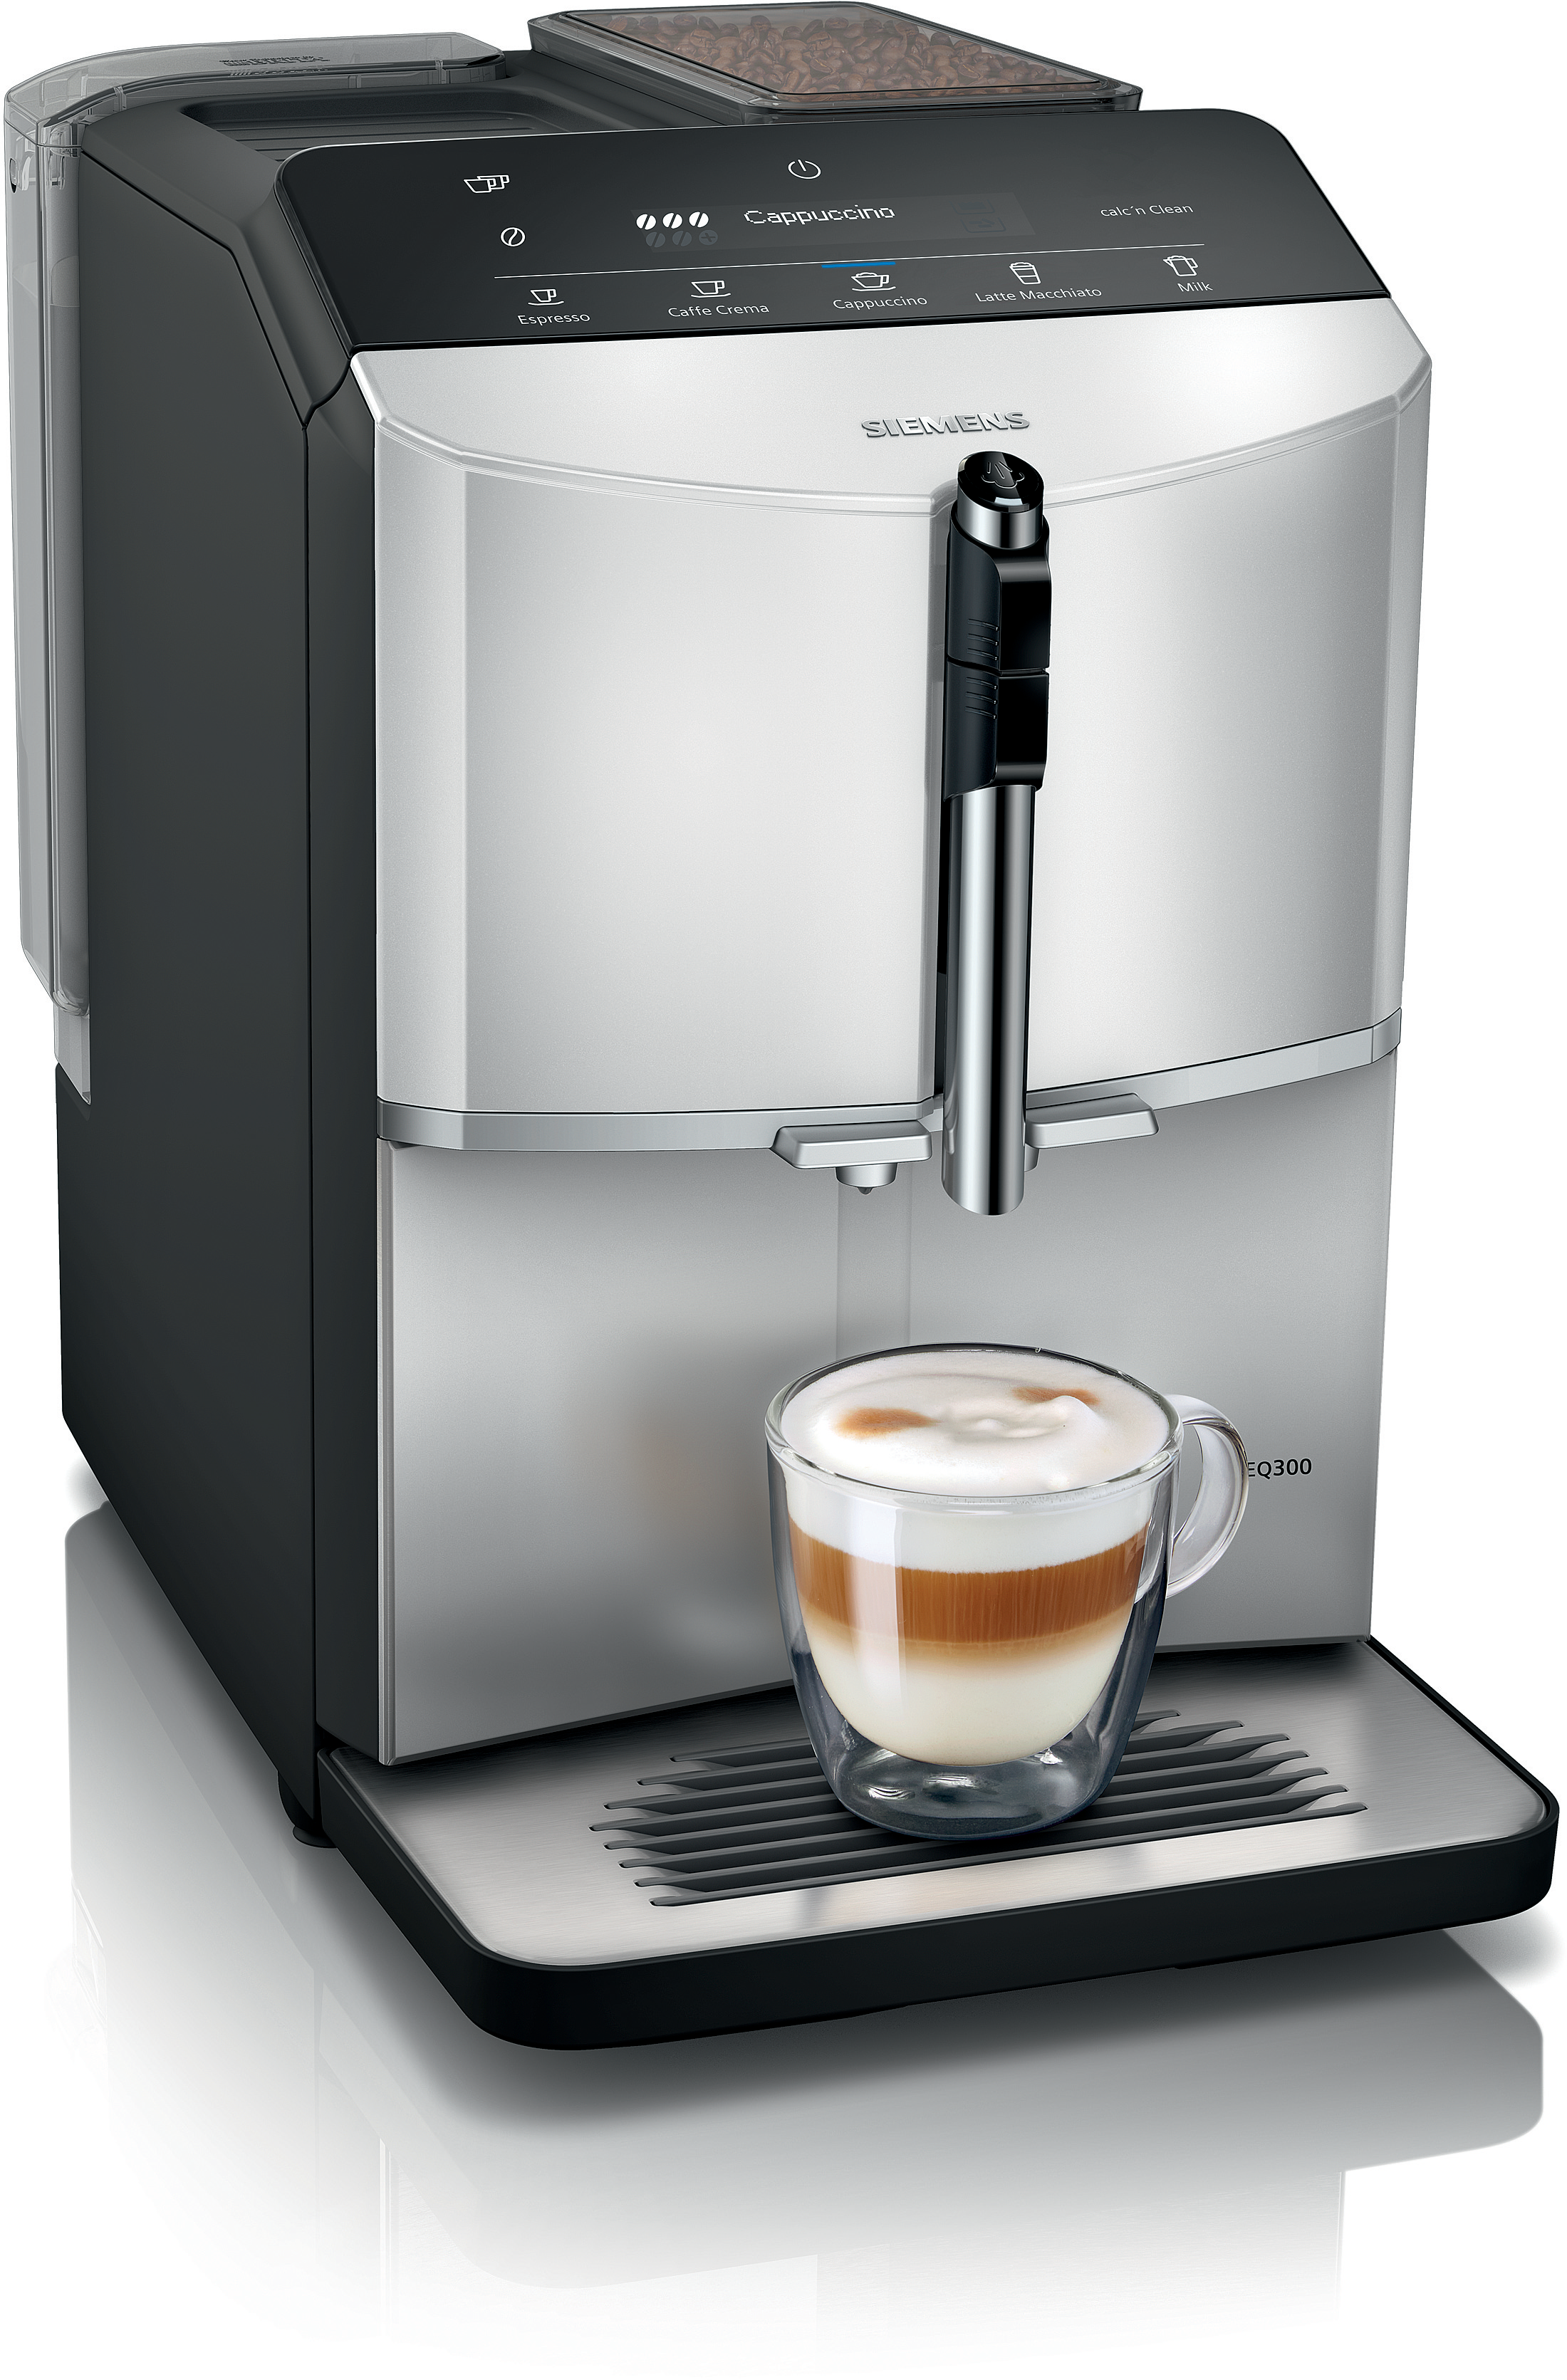 SIEMENS Volautomatisch koffiezetapparaat TF303E01, Daylight silver